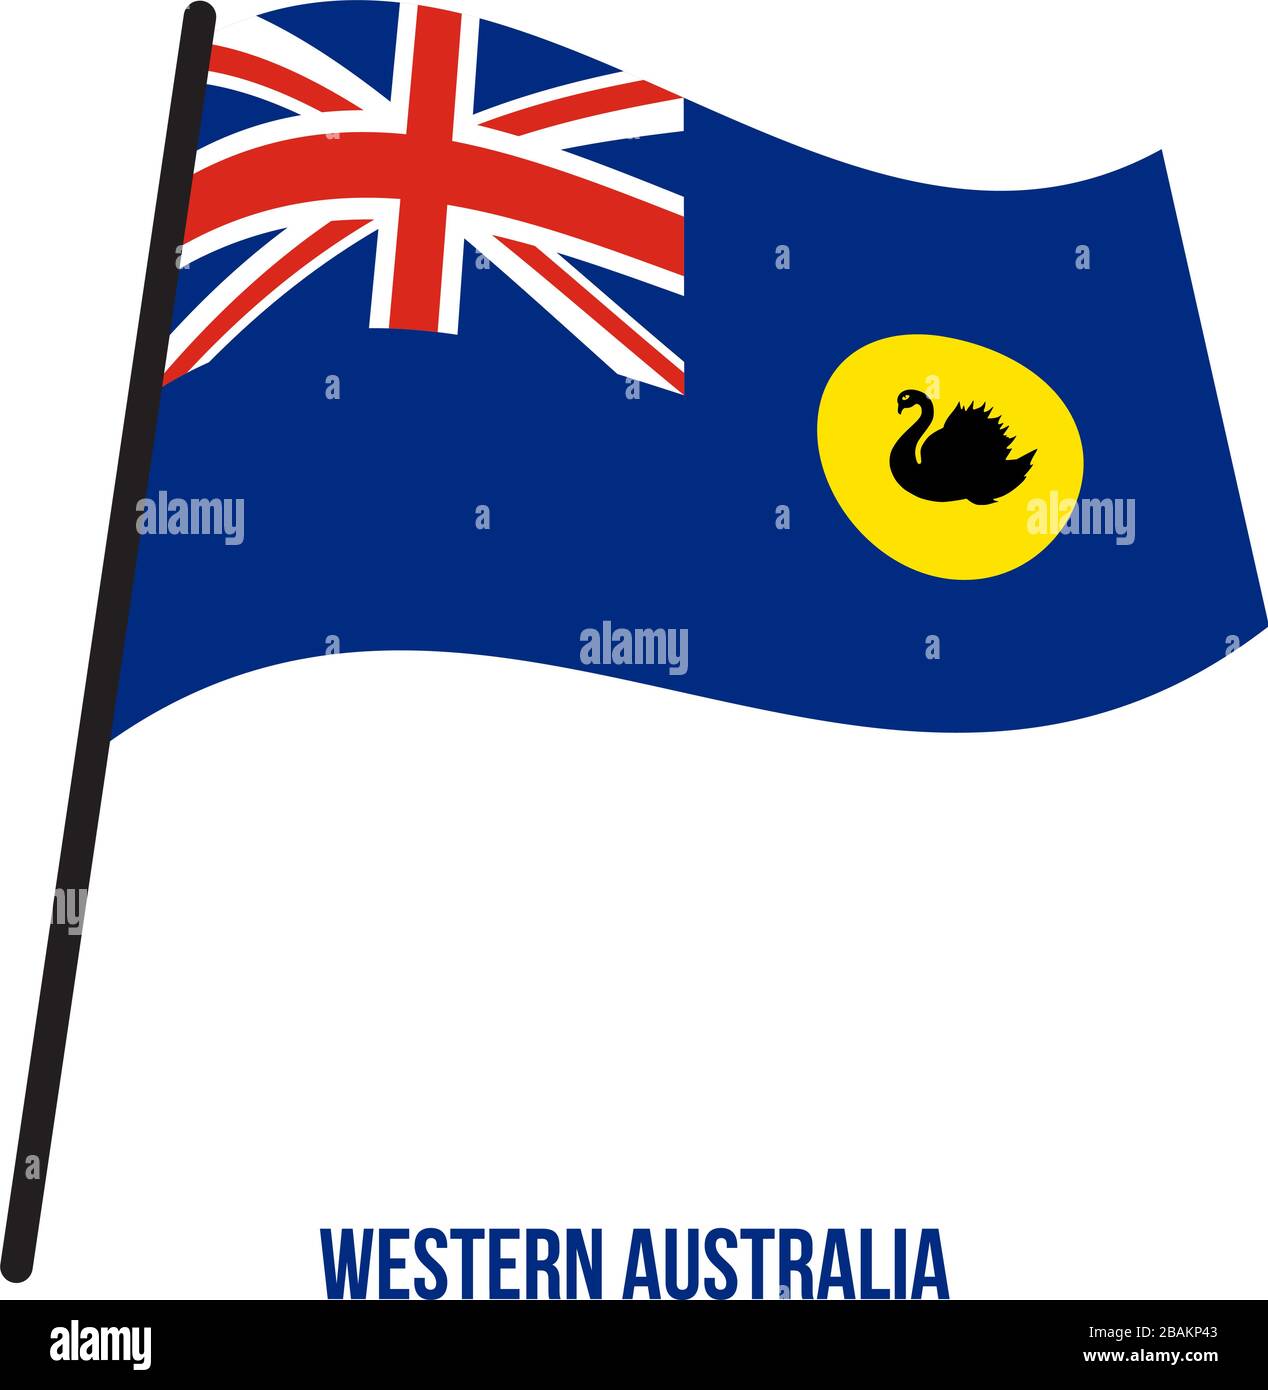 L'Australie Occidentale (WA) Drapeaux Vector Illustration sur fond blanc. Pavillon de l'Australie. Illustration de Vecteur